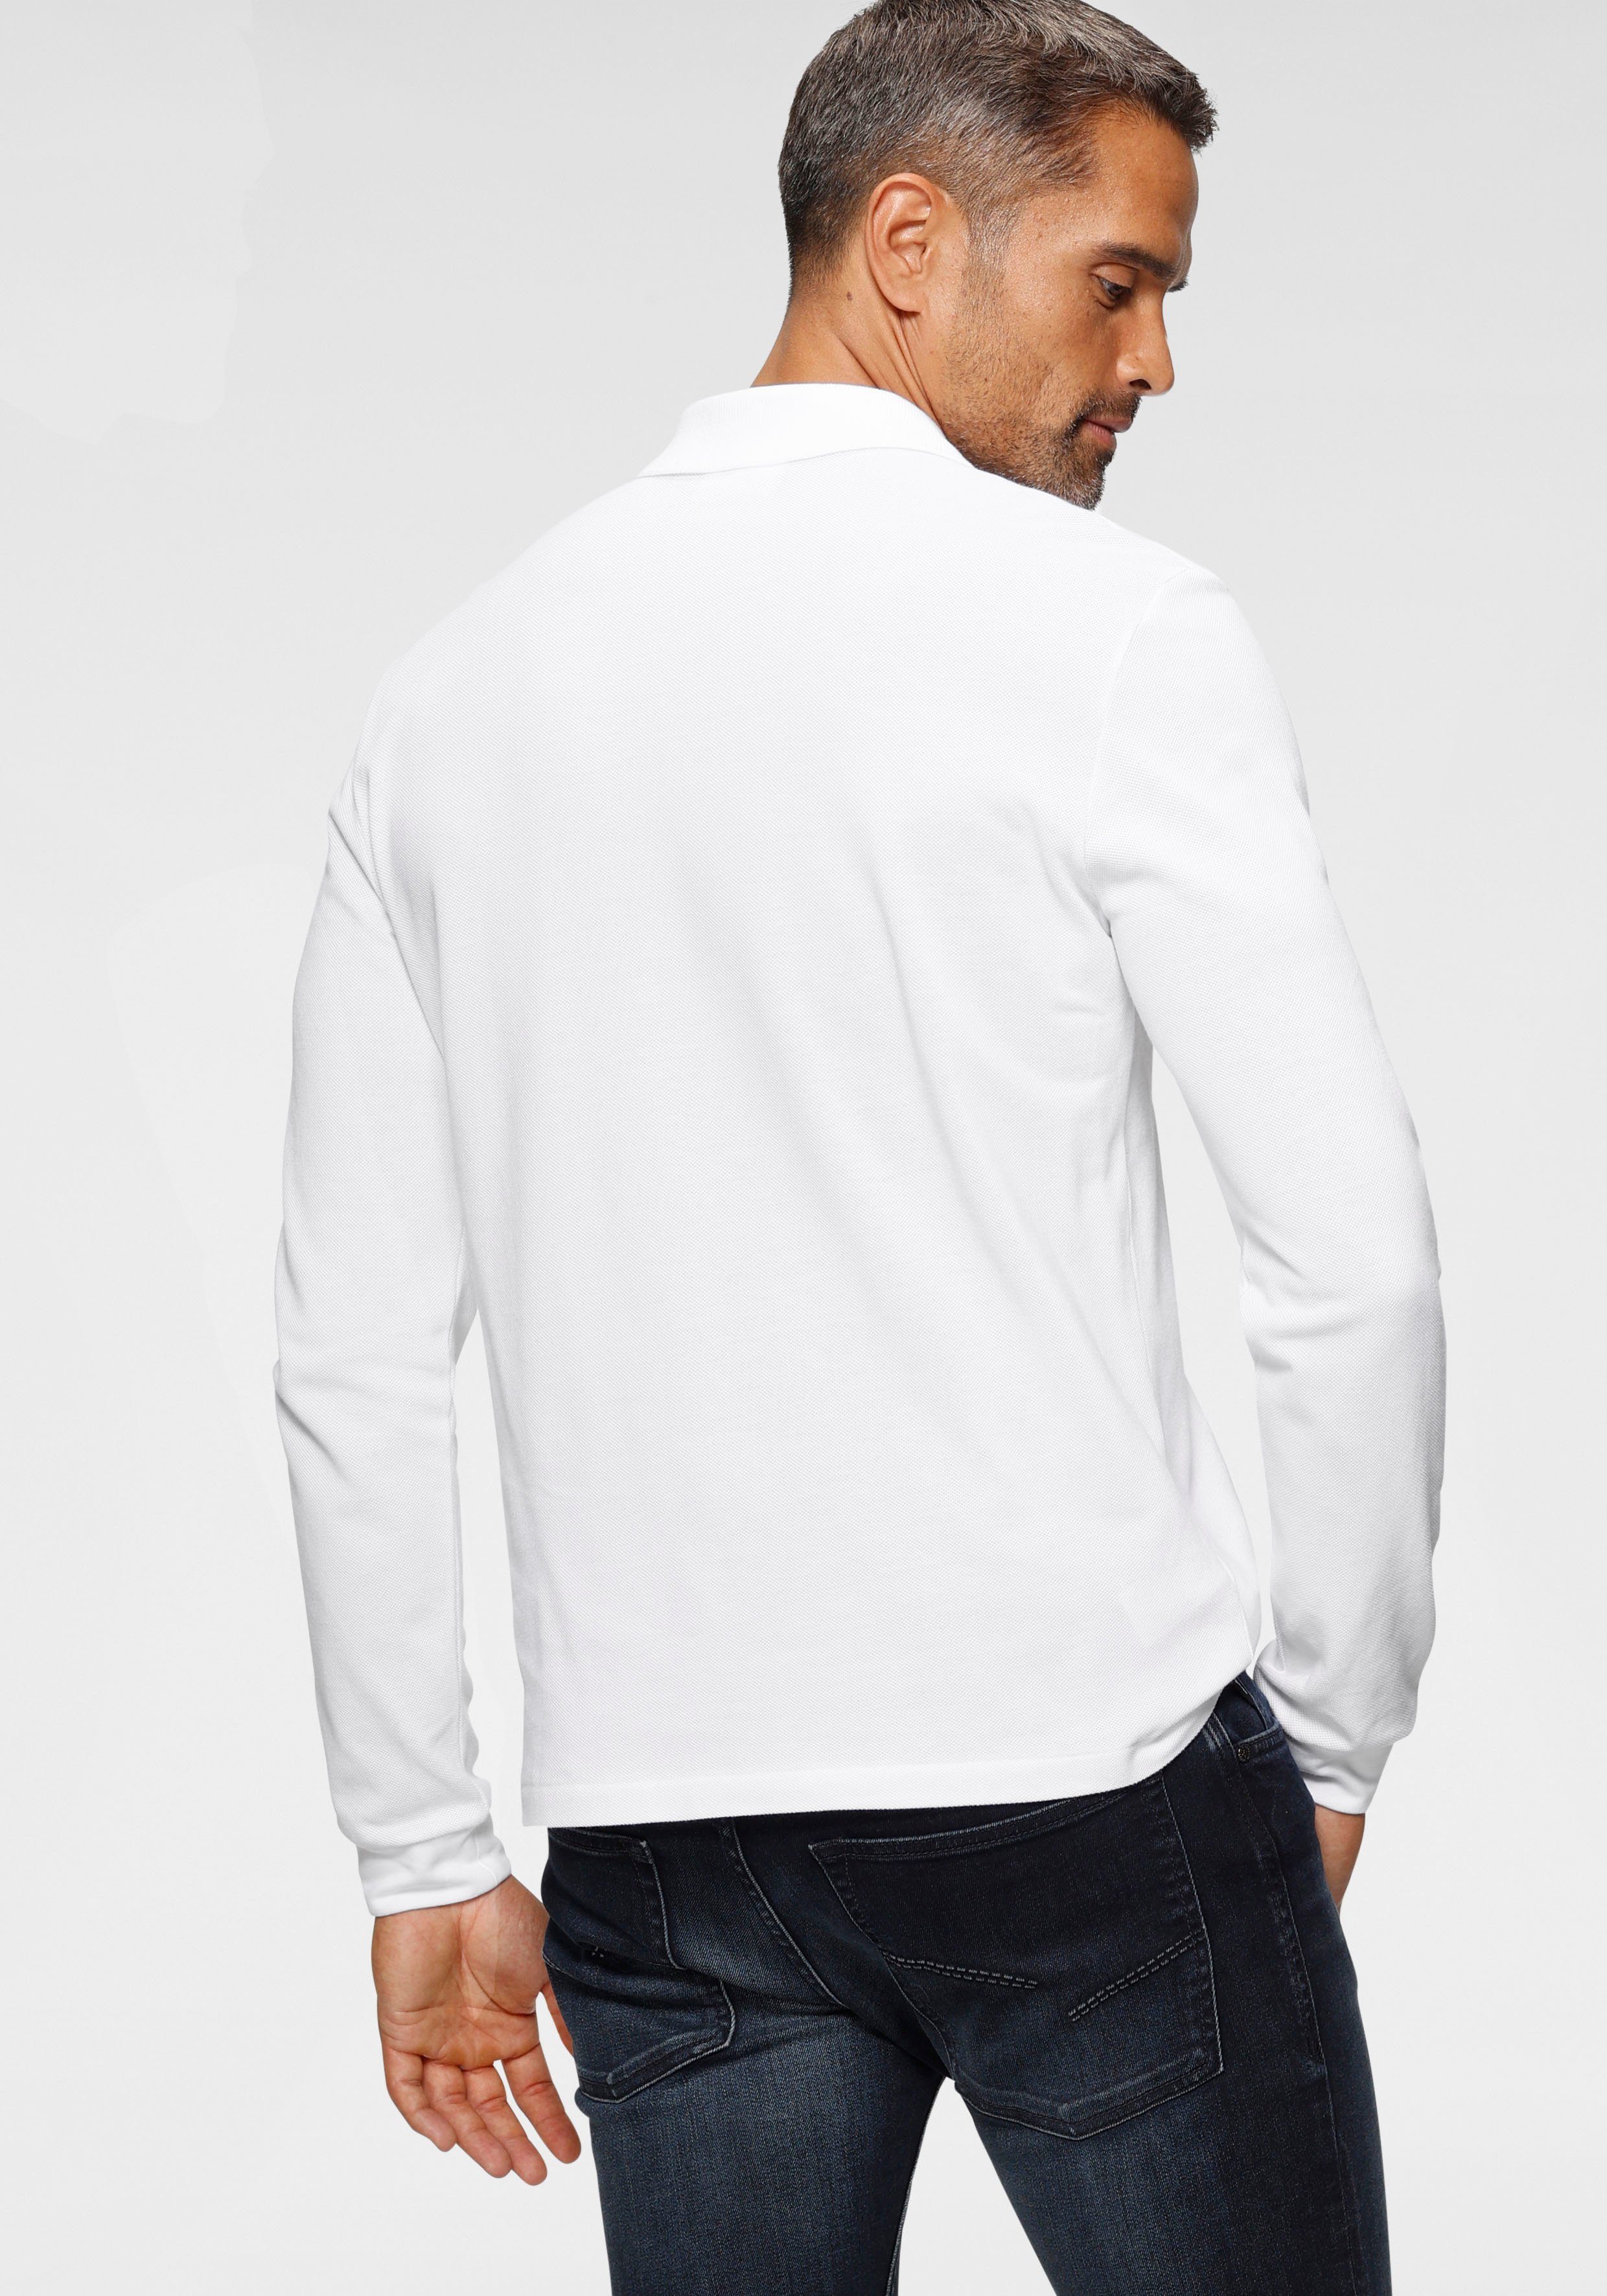 Basic Style Lacoste Langarm-Poloshirt weiß